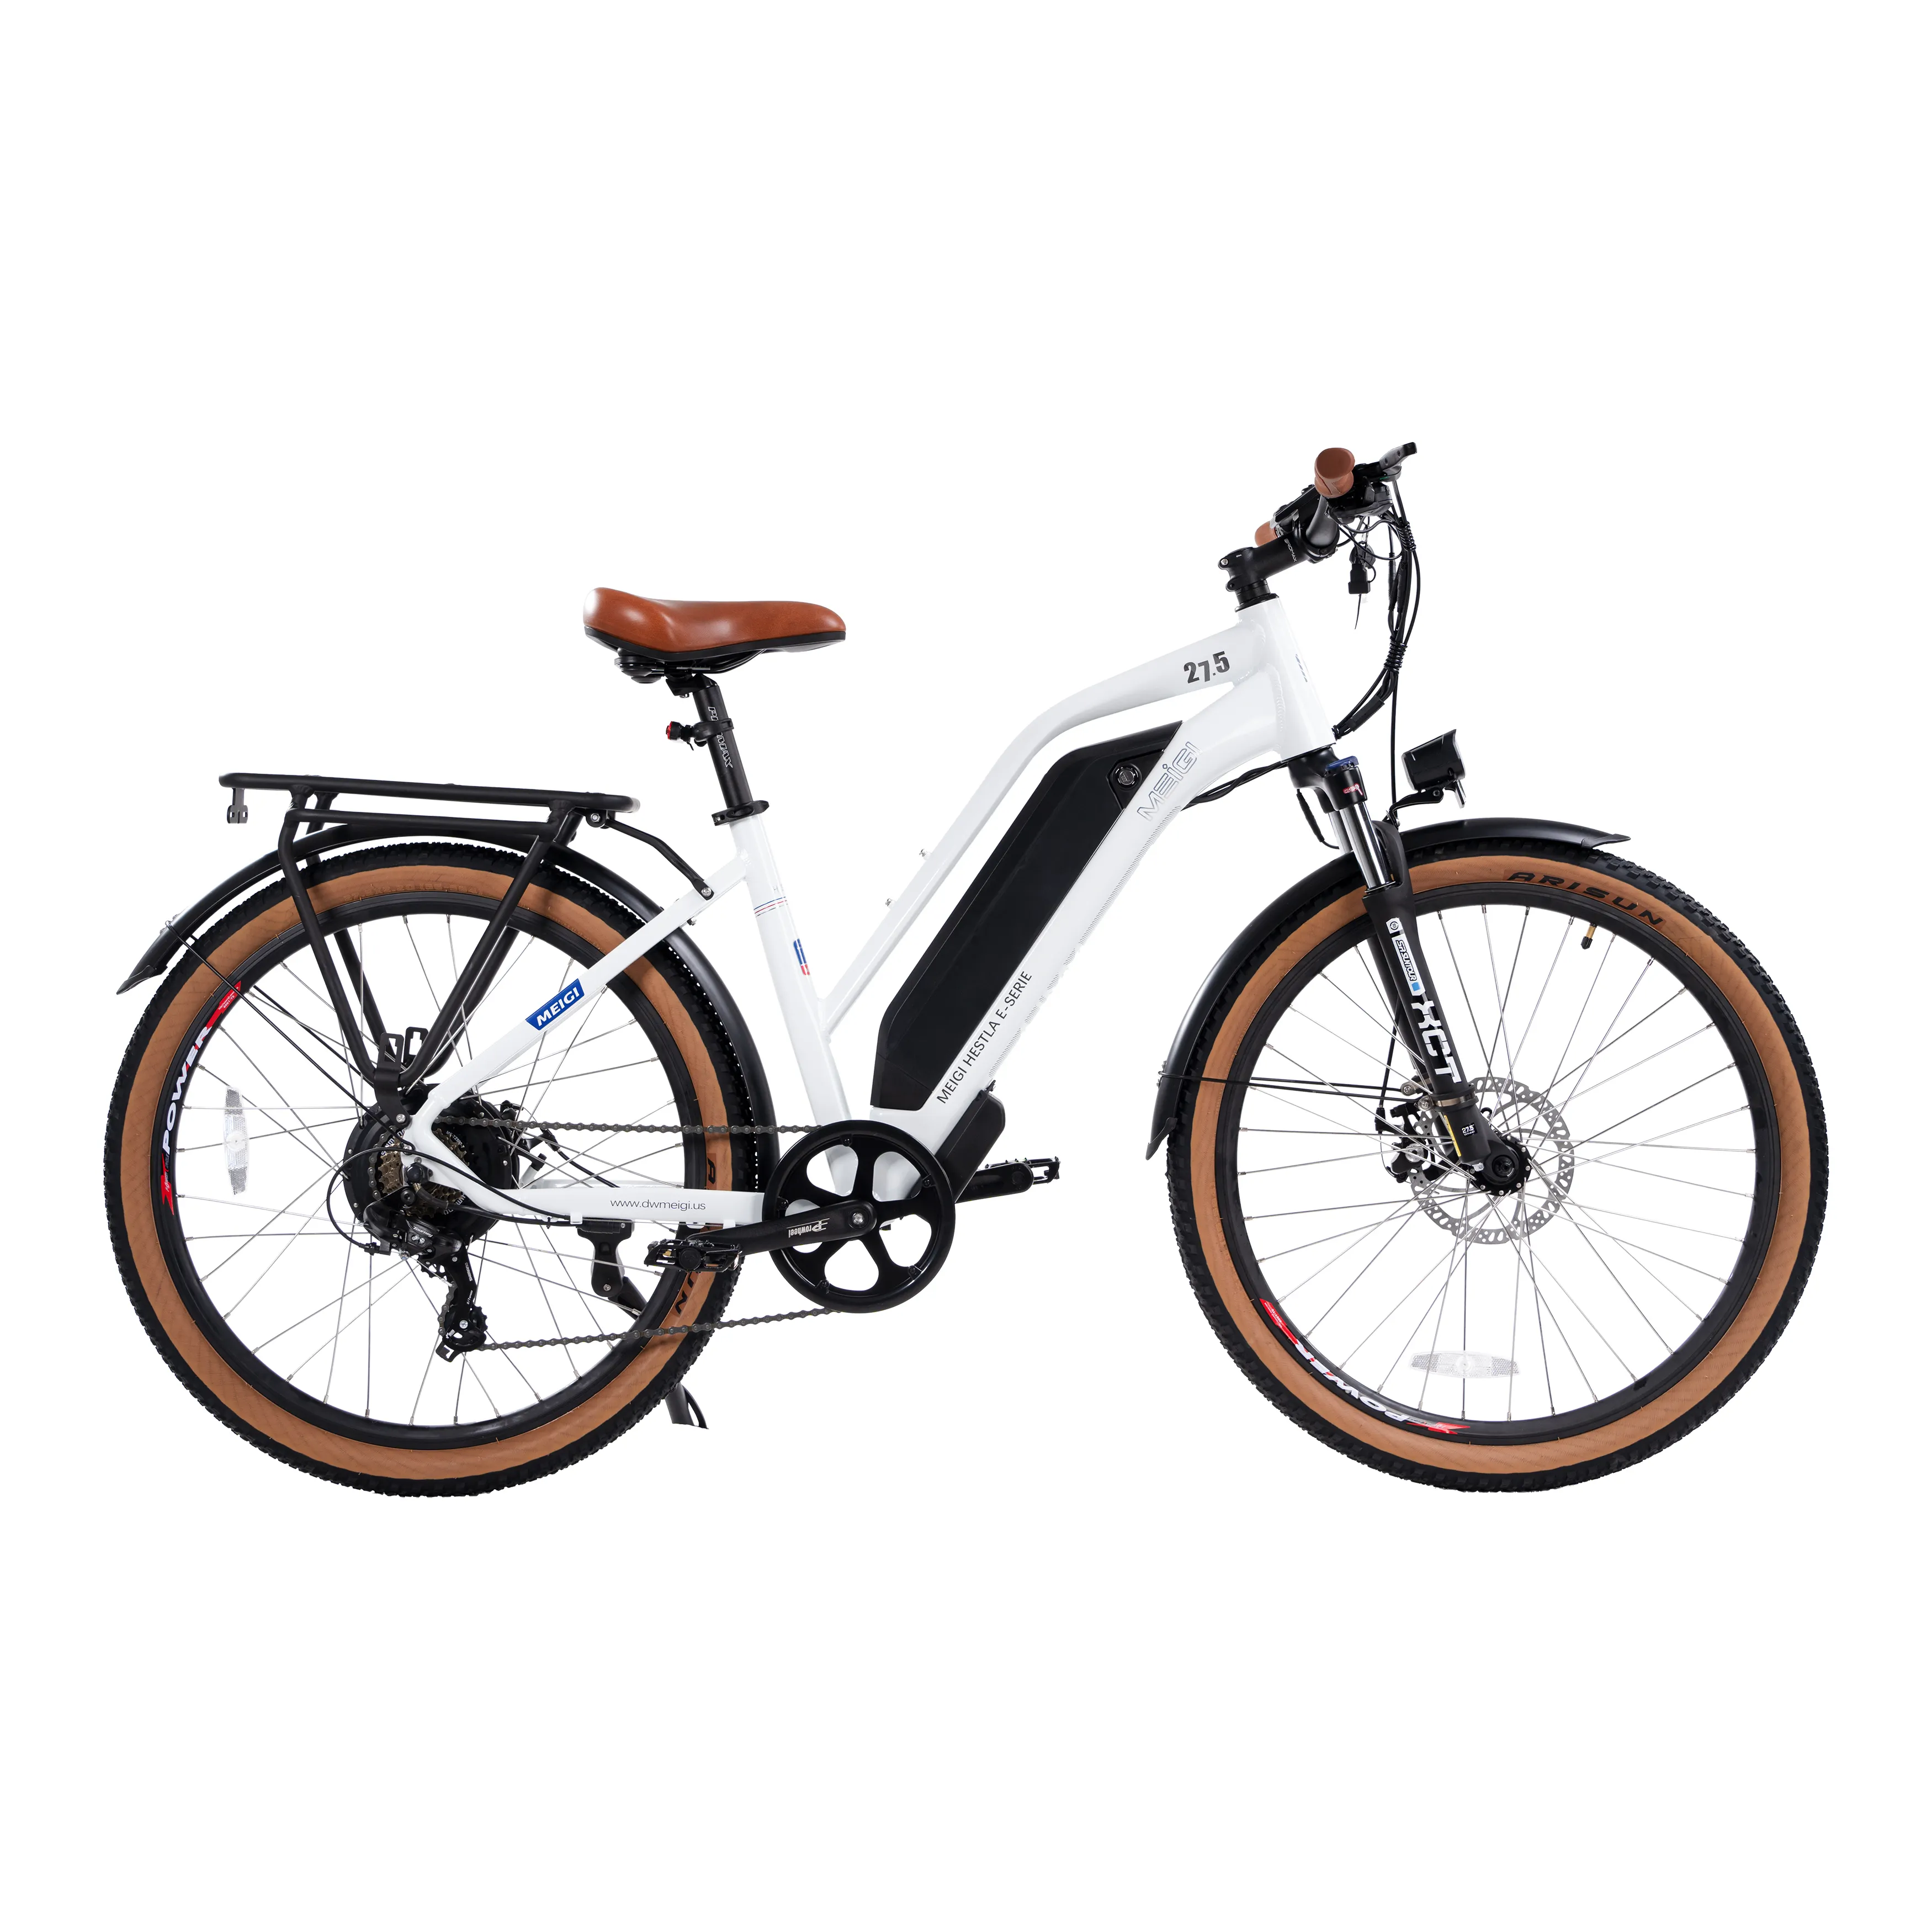 48 v750w bicicletta elettrica bicicletta urbana per adulti in magazzino bicicletta da pendolarismo urbana per la ricreazione